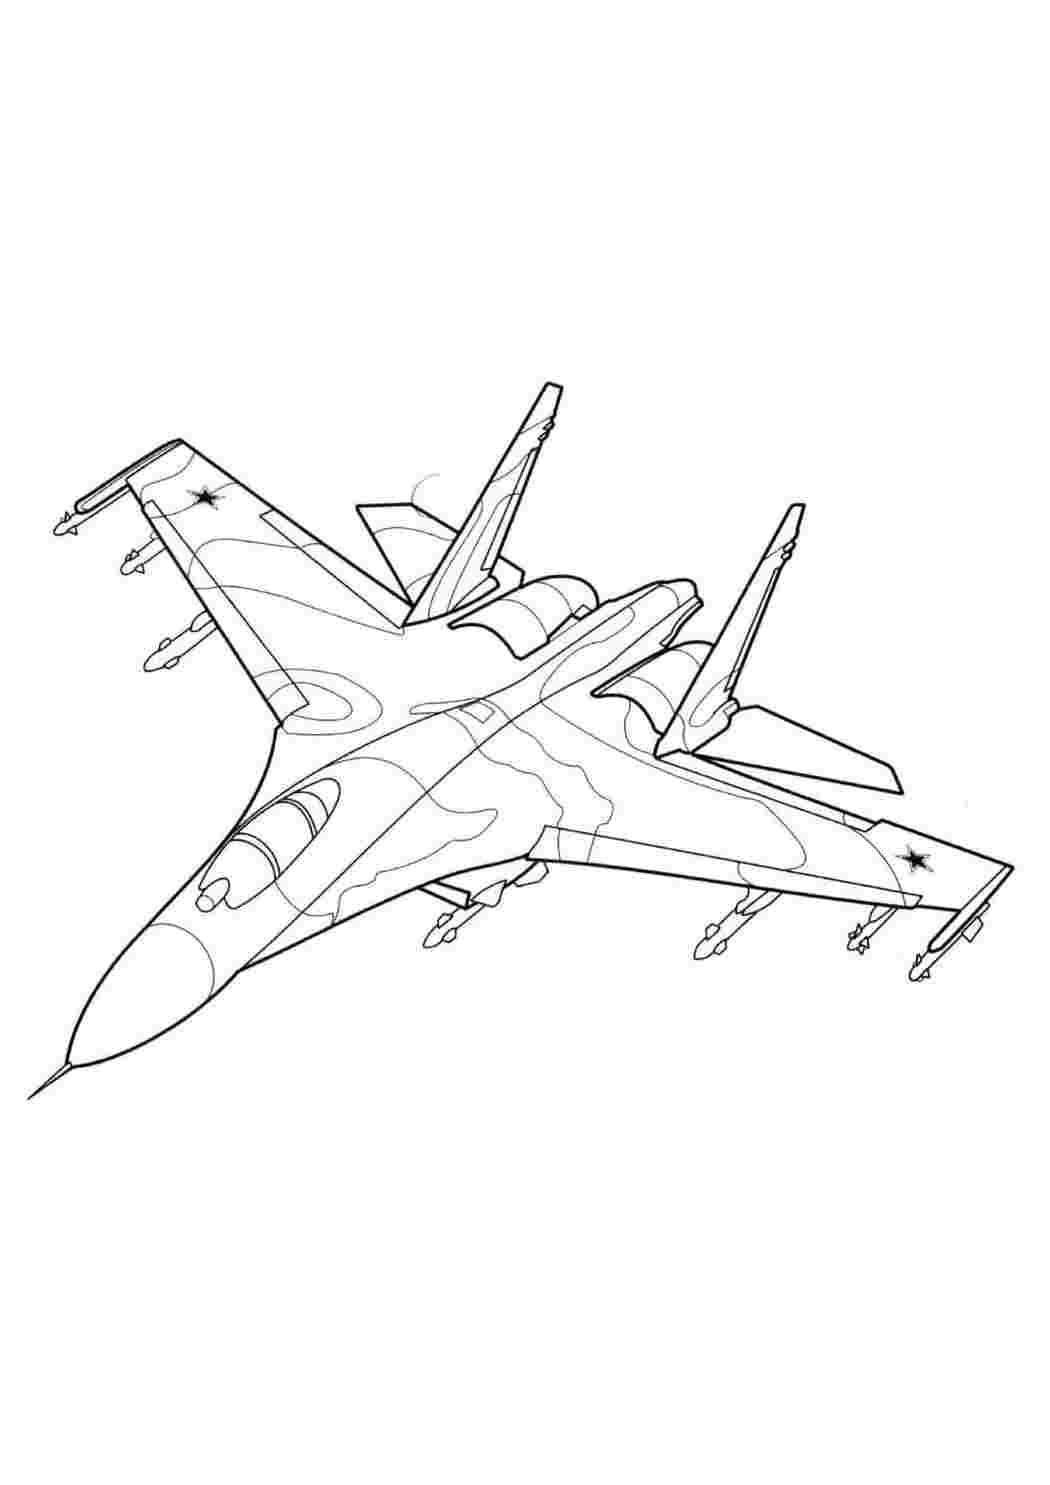 Раскраска самолет истребитель Су-24